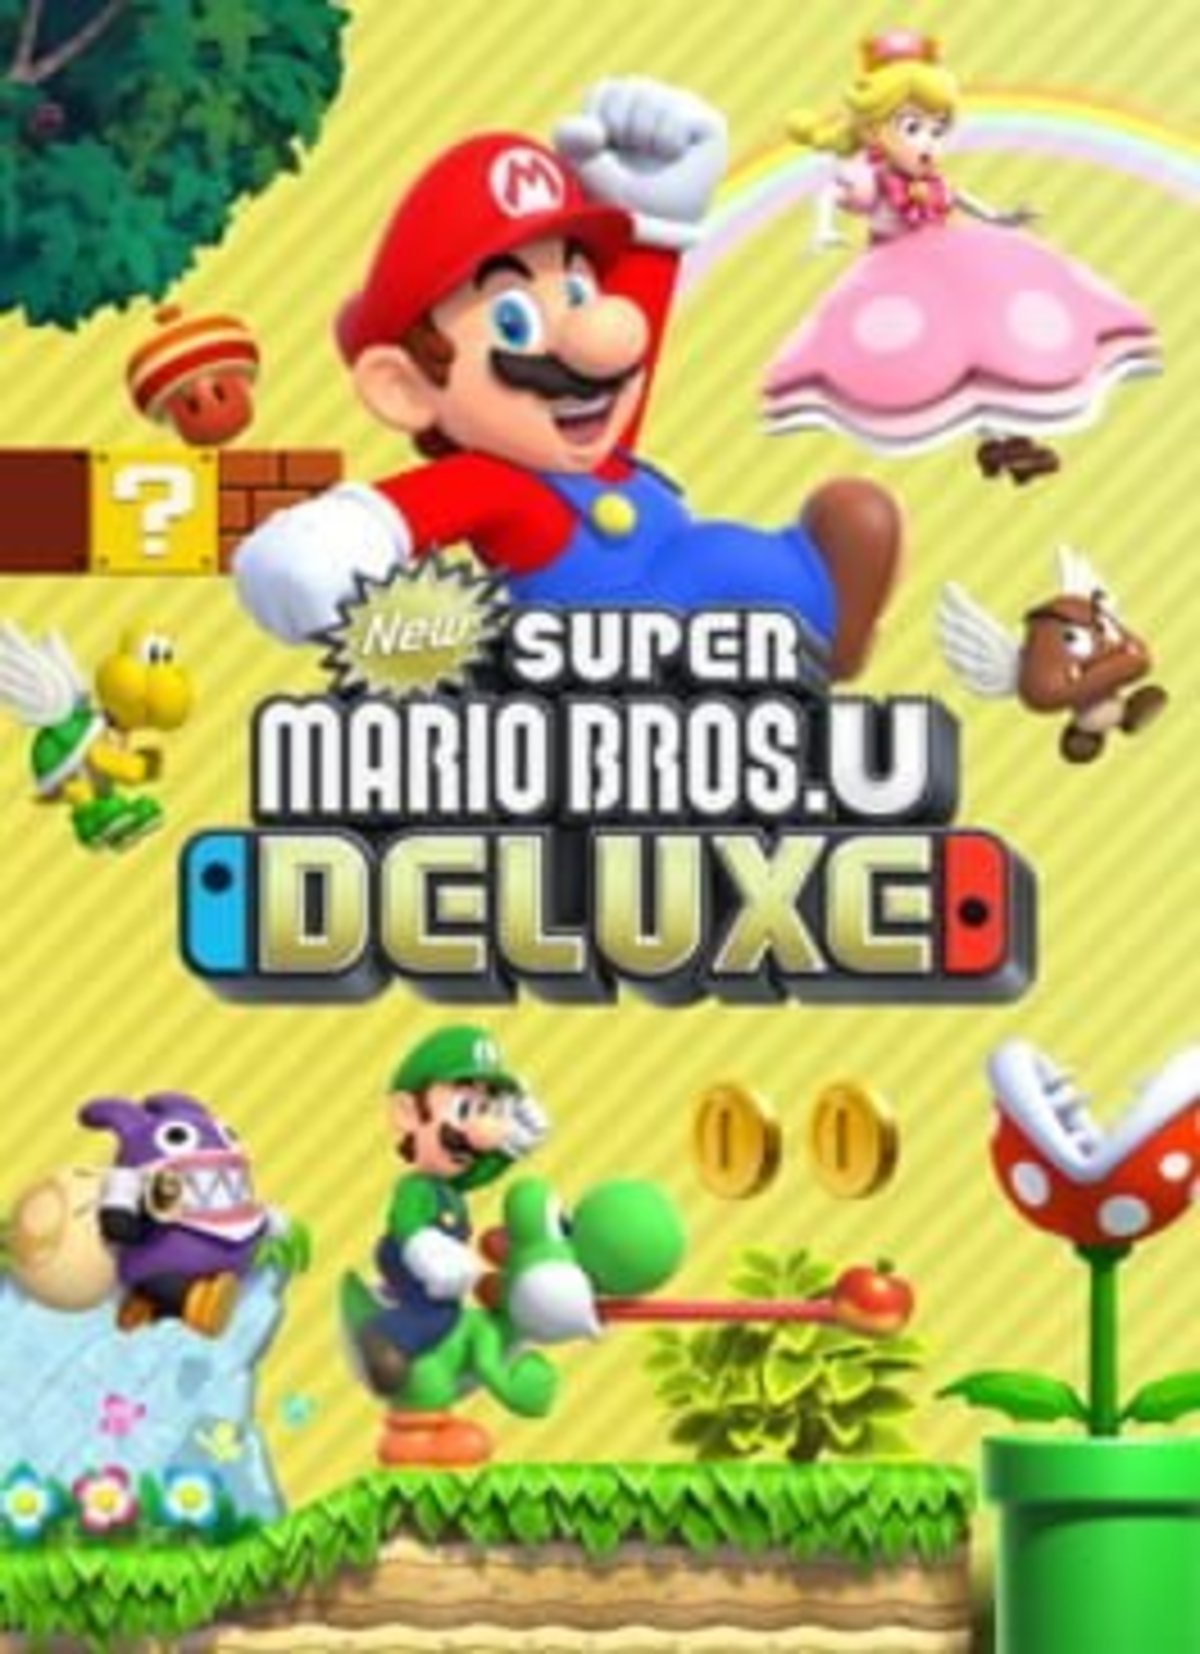 El próximo juego de Super Mario filtra sus primeros detalles: cooperativo, 2D y Peach jugable